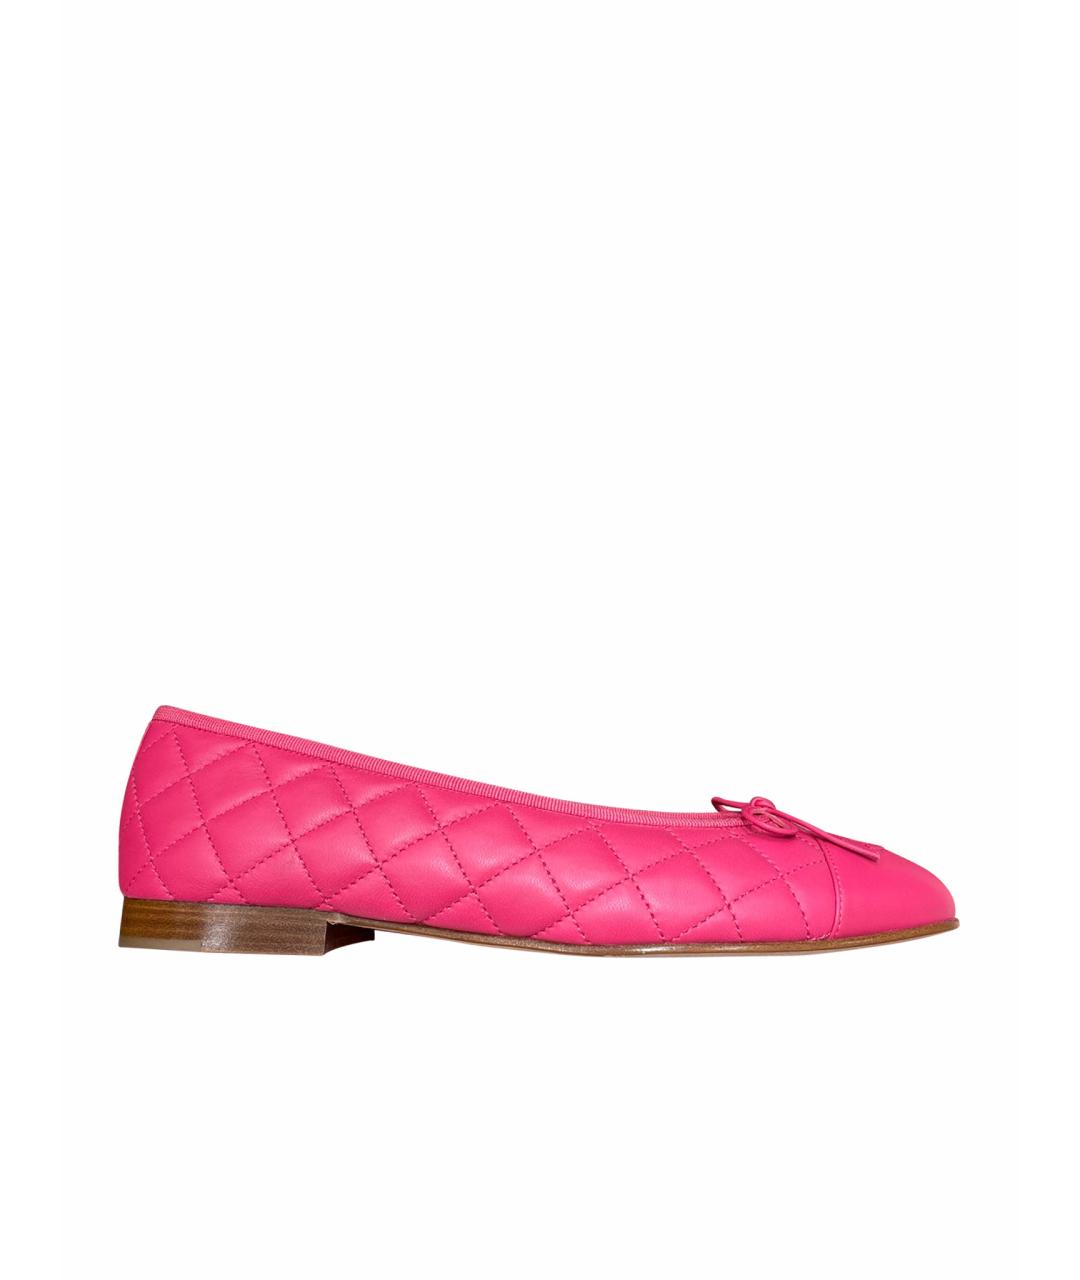 CHANEL PRE-OWNED Розовые кожаные балетки, фото 1